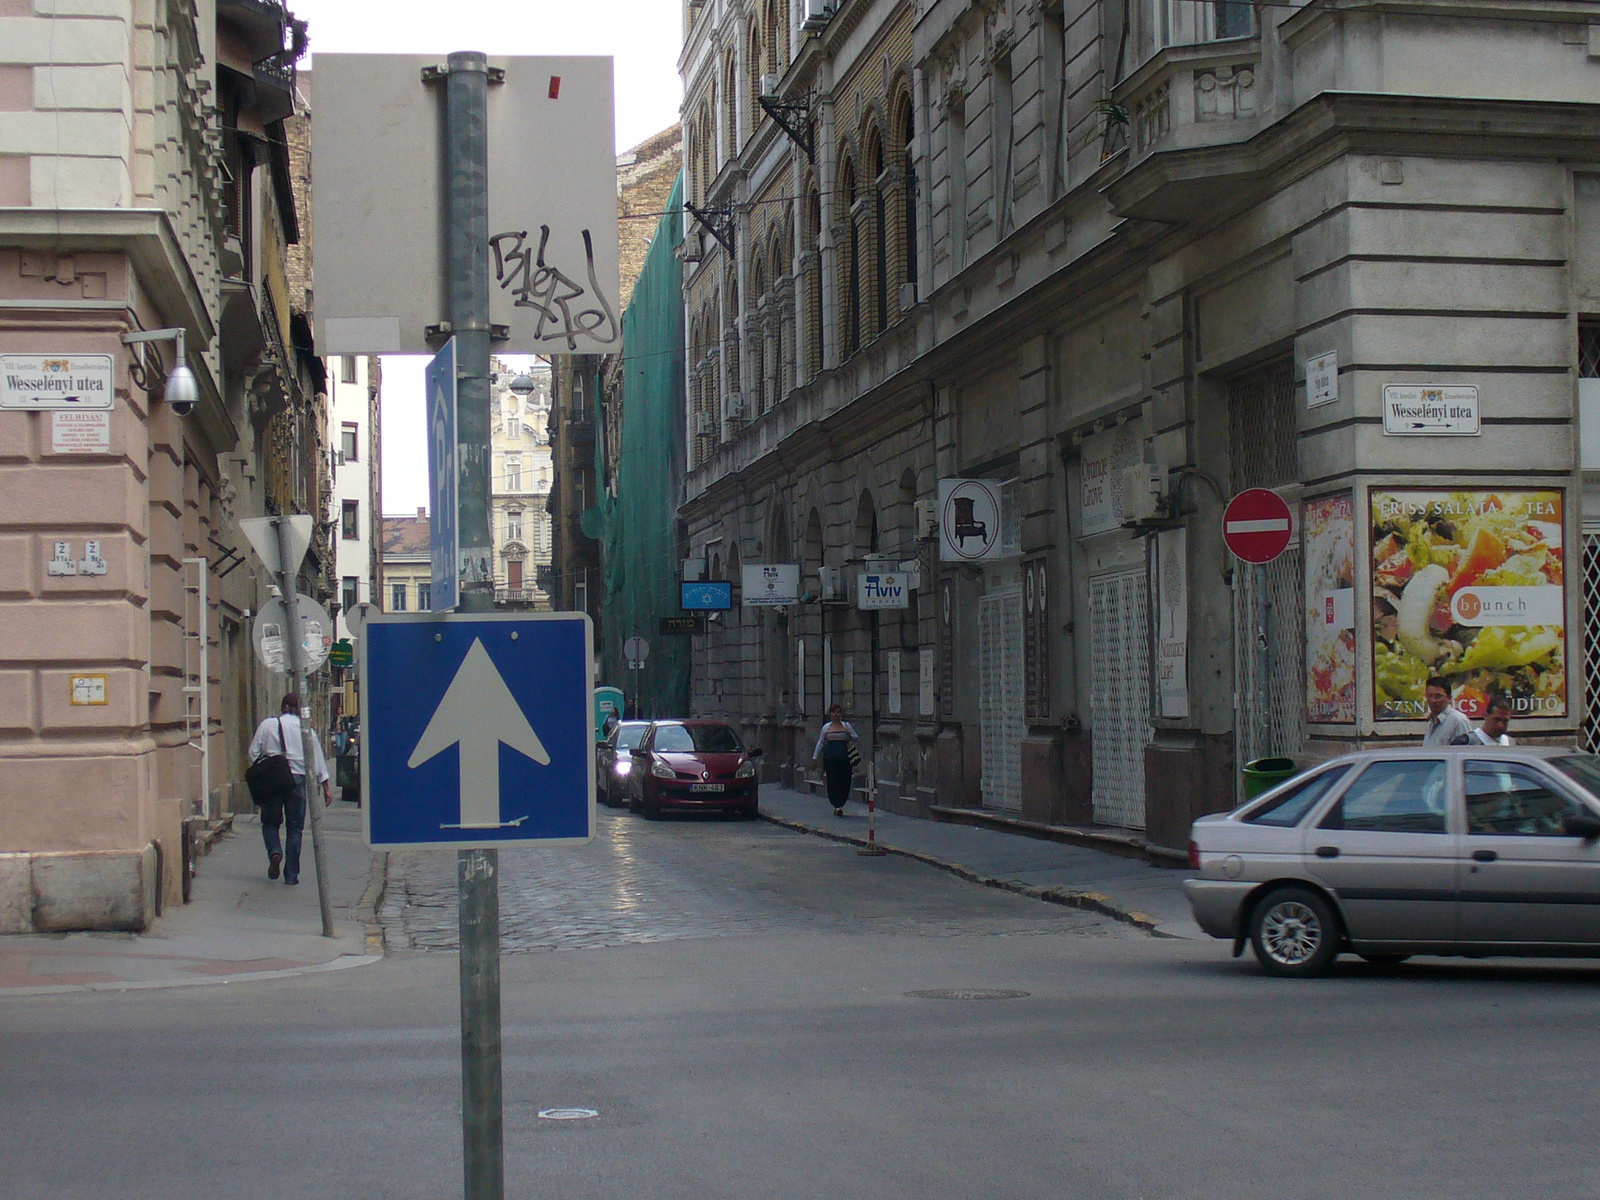 Ellentmondásos közlekedési tábla - Síp utca. Fotó: Erdős Rita